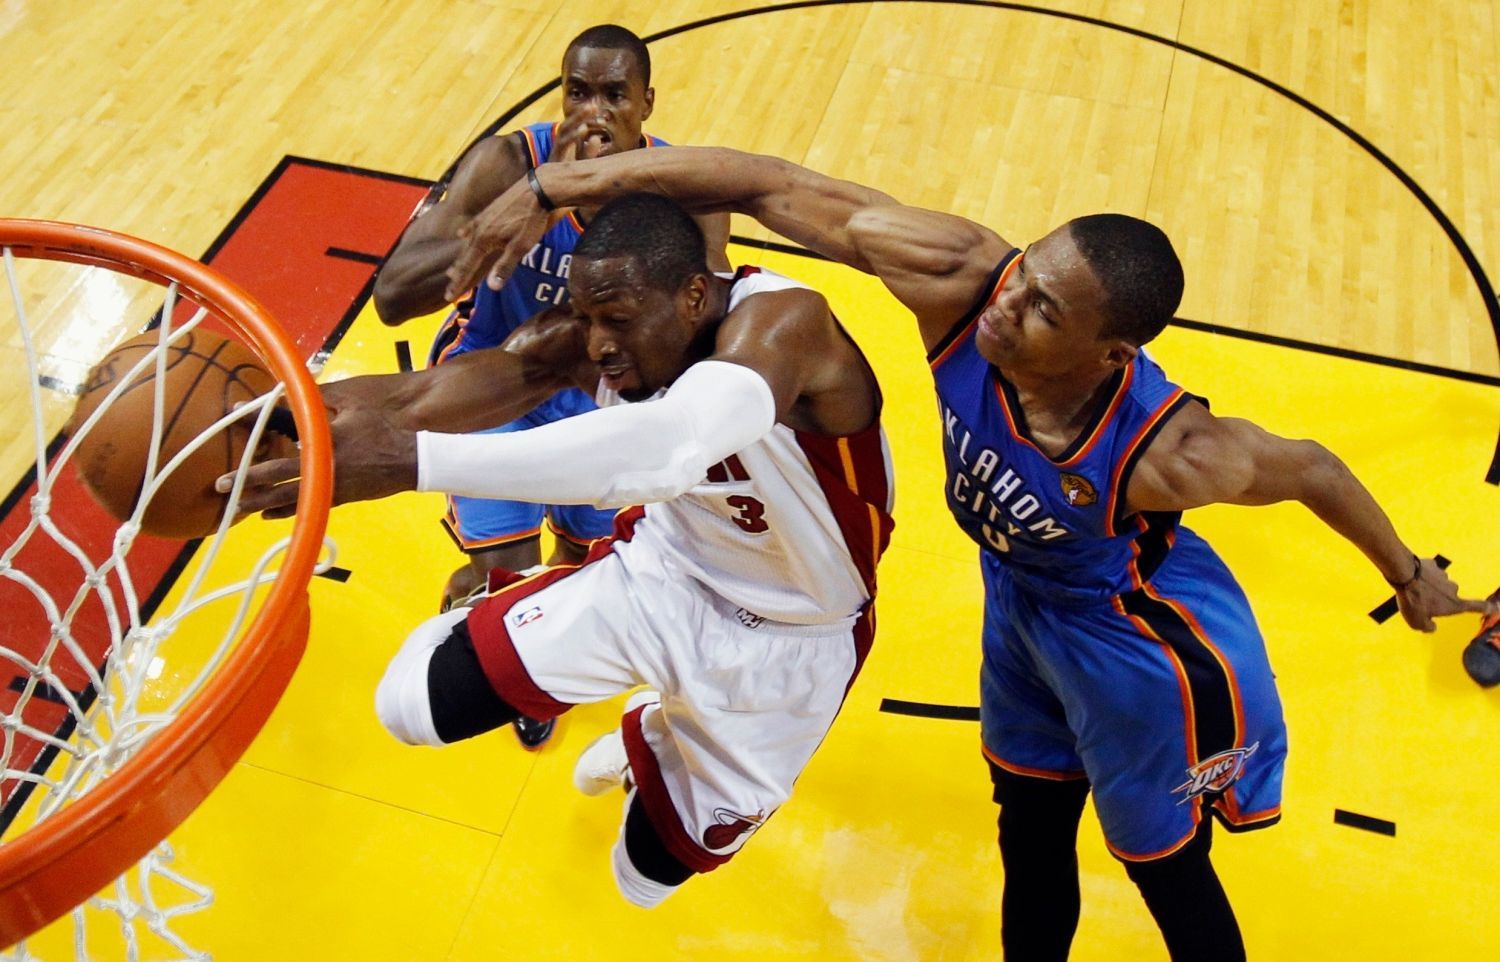 Basketbalista Dwayne Wade z Miami se snaží zavěsit přes bránící Russella Westbrooka (vpravo) a Kendricka Perkinse z Oklahomy ve finále play-off NBA 2012.